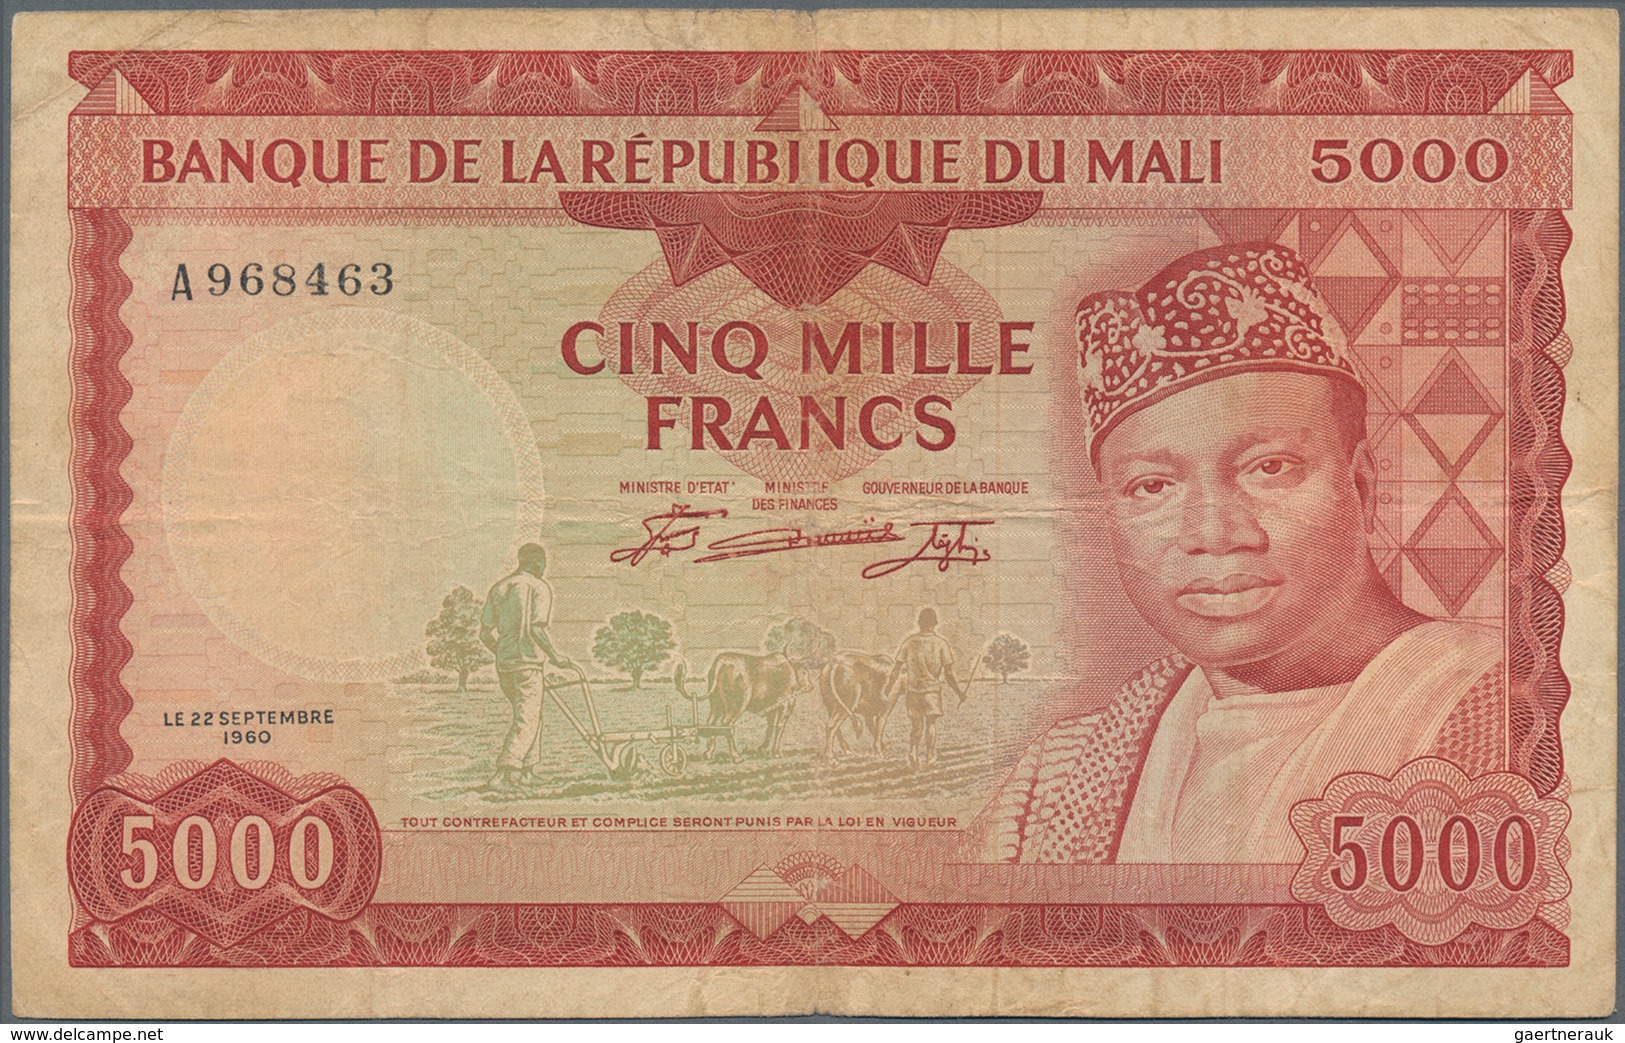 Mali: Banque De La République Du Mali 5000 Francs 1960 (1967), P.10, Lightly Stained Paper With Smal - Mali